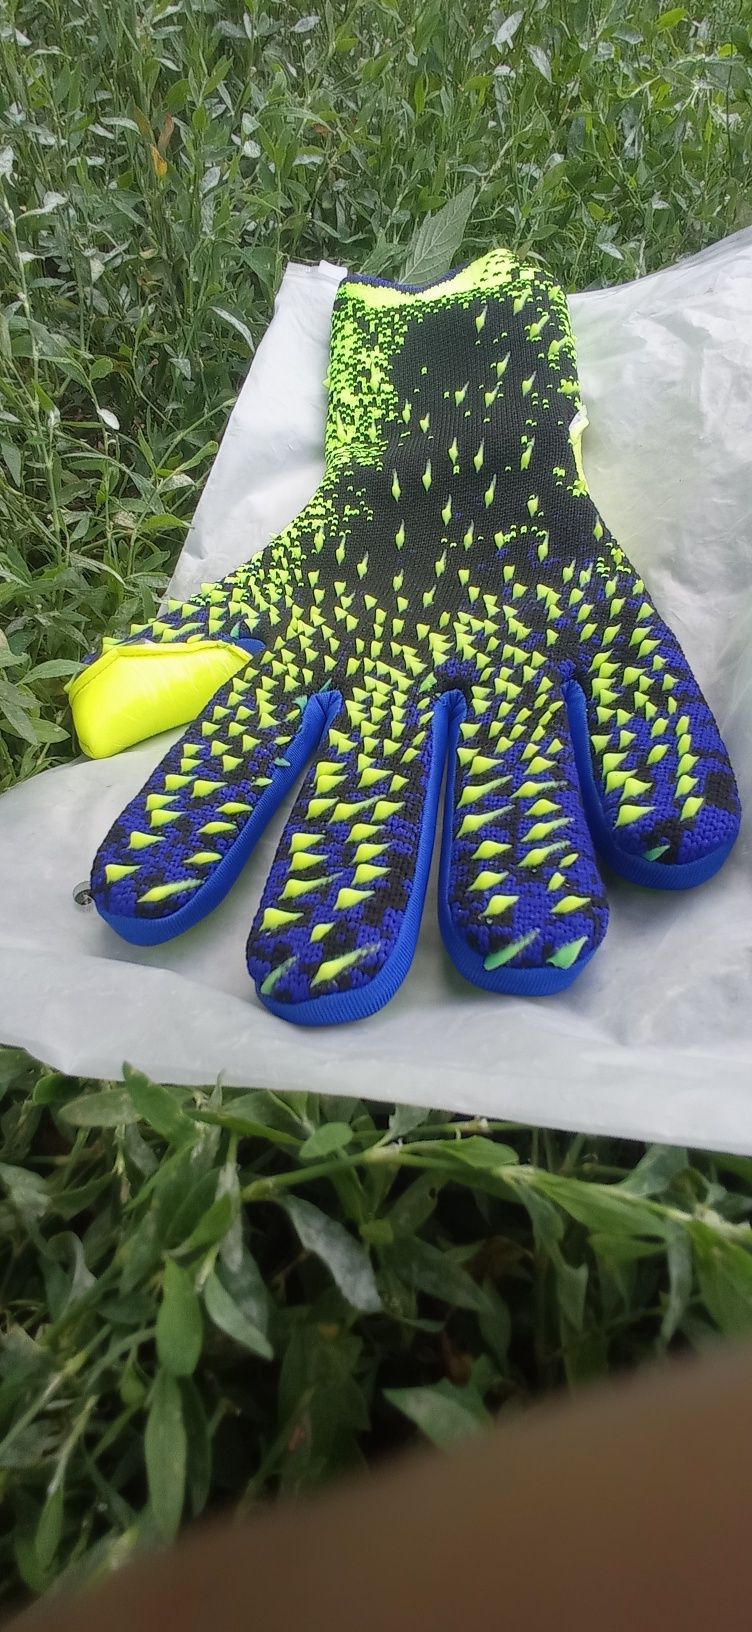 Нові вротарські перчатки Adidas Predator АДІДАС ПРЕДАТОР